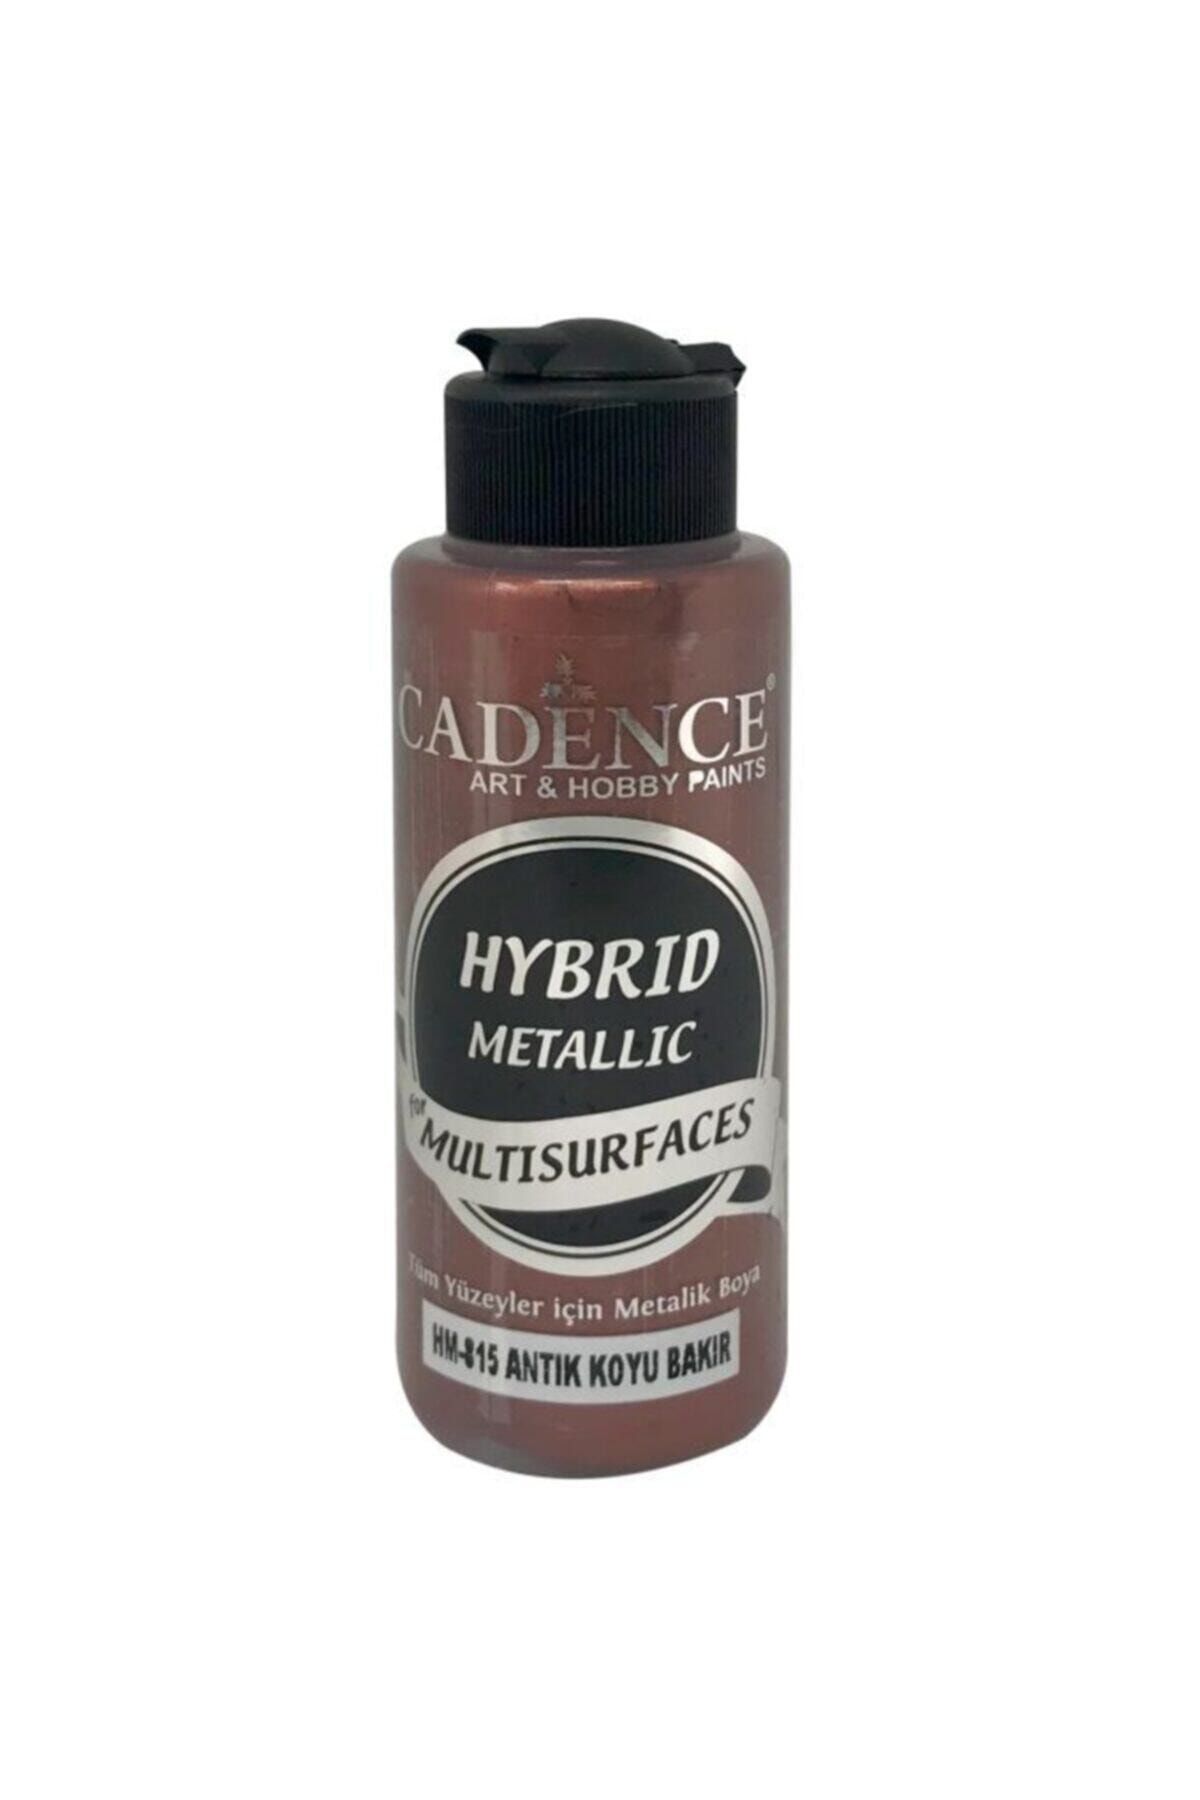 Cadence Hybrid Multisurface Metalik Boya 120 ml. Hm-815 Antik Koyu Bakır